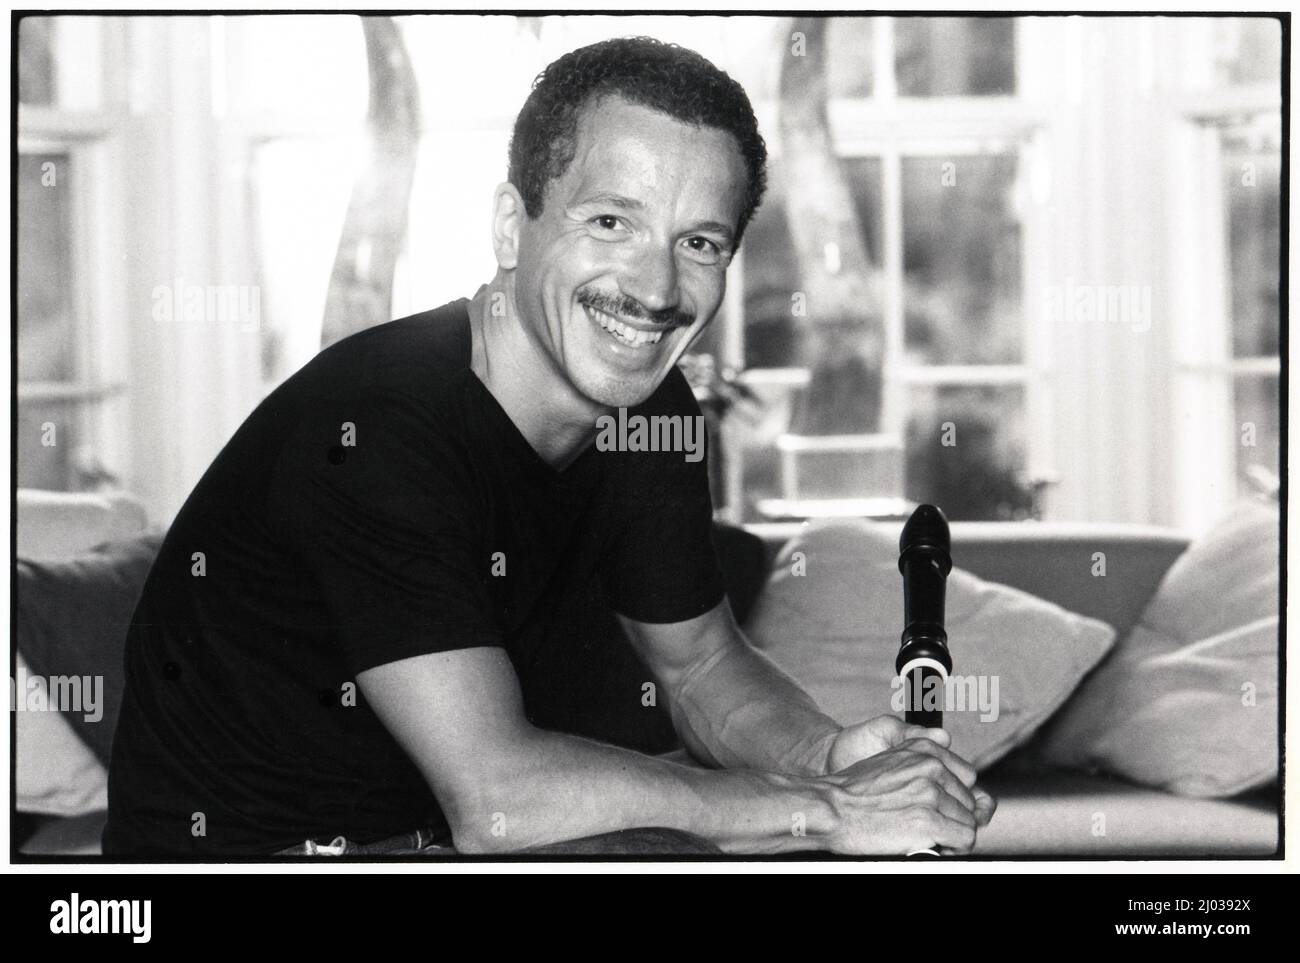 Un ritratto proposto del leggendario pianista jazz Keith Jarrett nella sua casa nella campagna della Pennsylvania. Sorride e tiene un registratore. Foto Stock